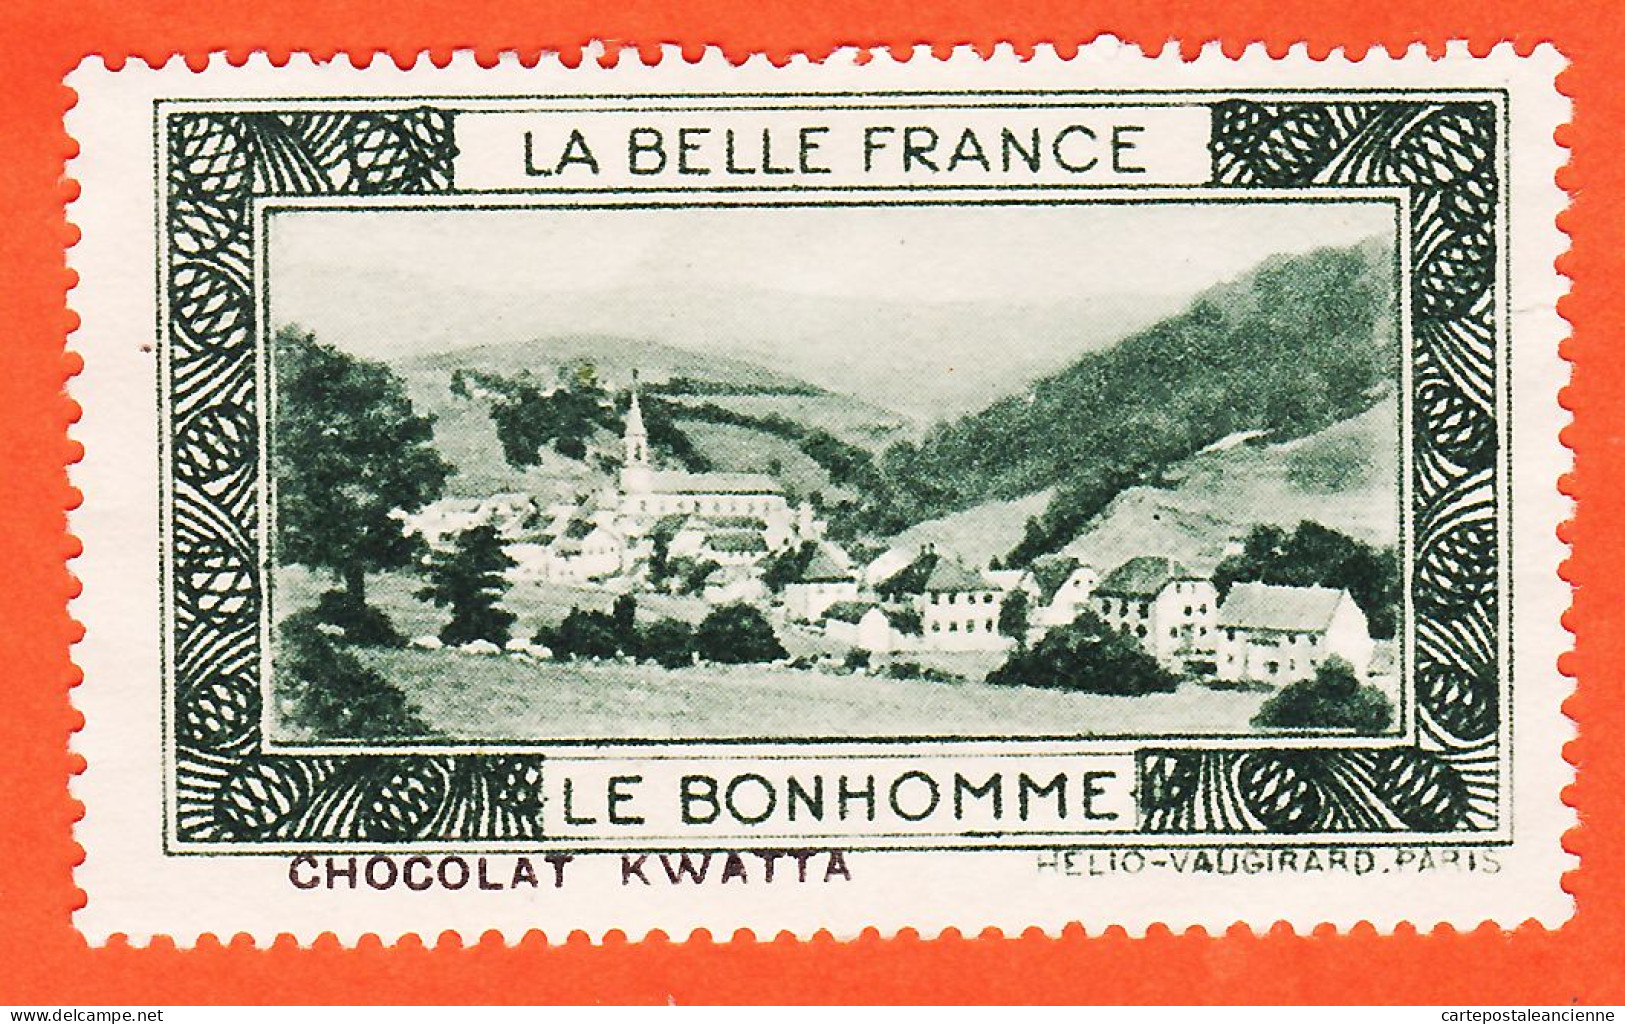 00162 ● (2) LE BONHOMME 68-Haut Rhin Pub Chocolat KWATTA Vignette Collection BELLE FRANCE HELIO-VAUGIRARD Erinnophilie - Toerisme (Vignetten)